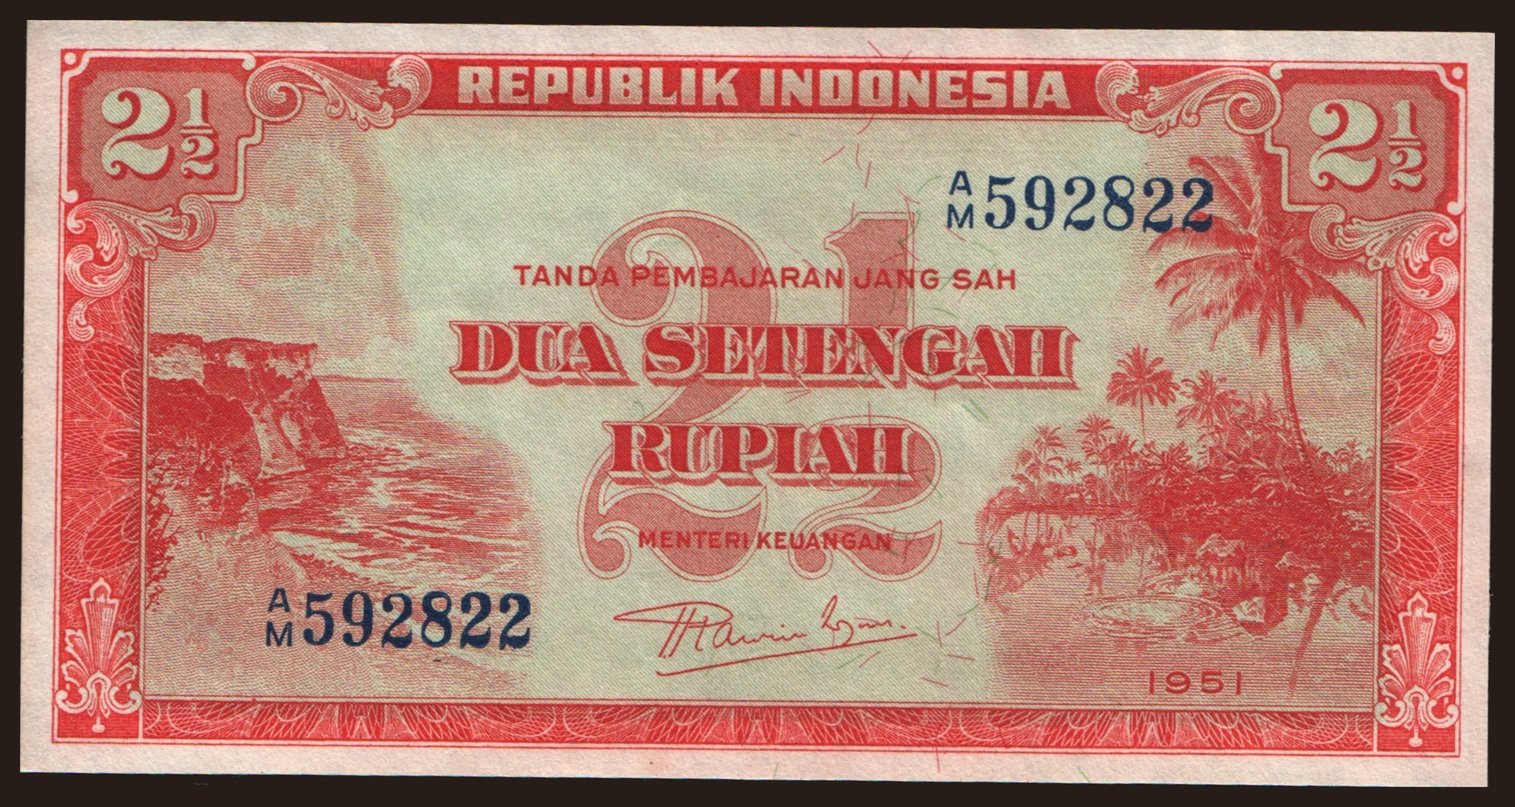 2 1/2 rupiah, 1951